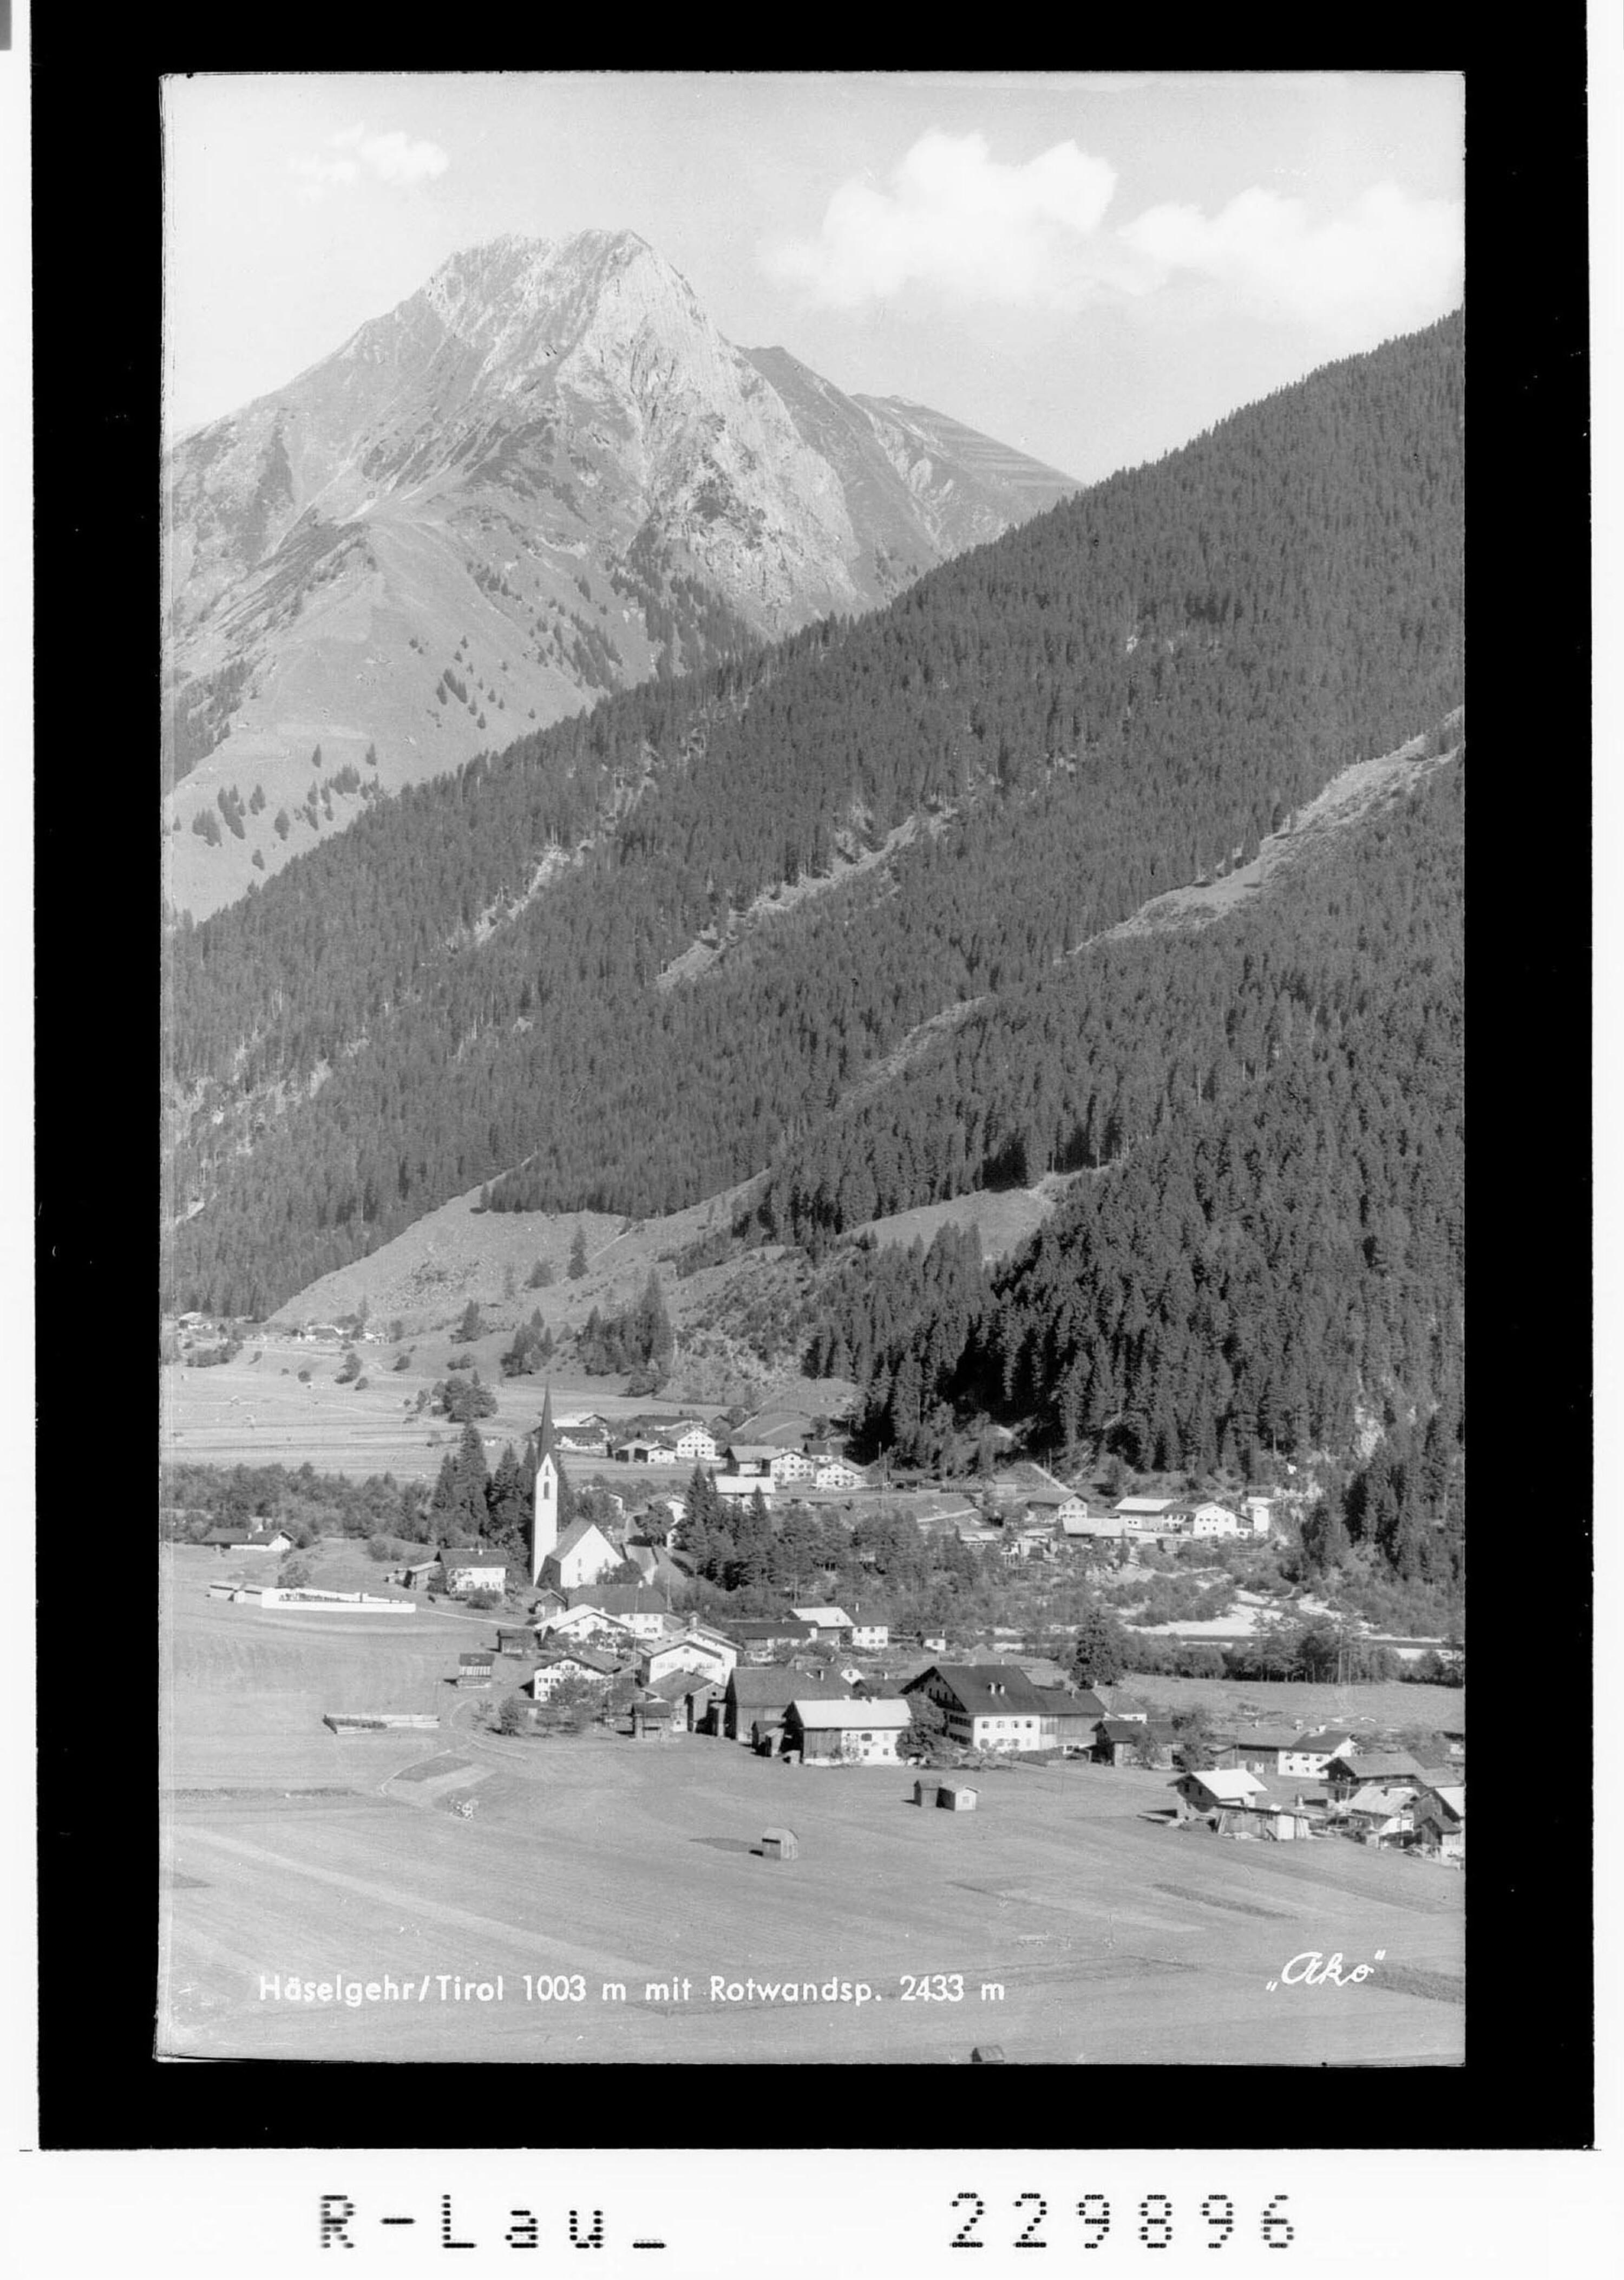 Häselgehr / Tirol 1003 m mit Rotwandspitze 2433 m></div>


    <hr>
    <div class=